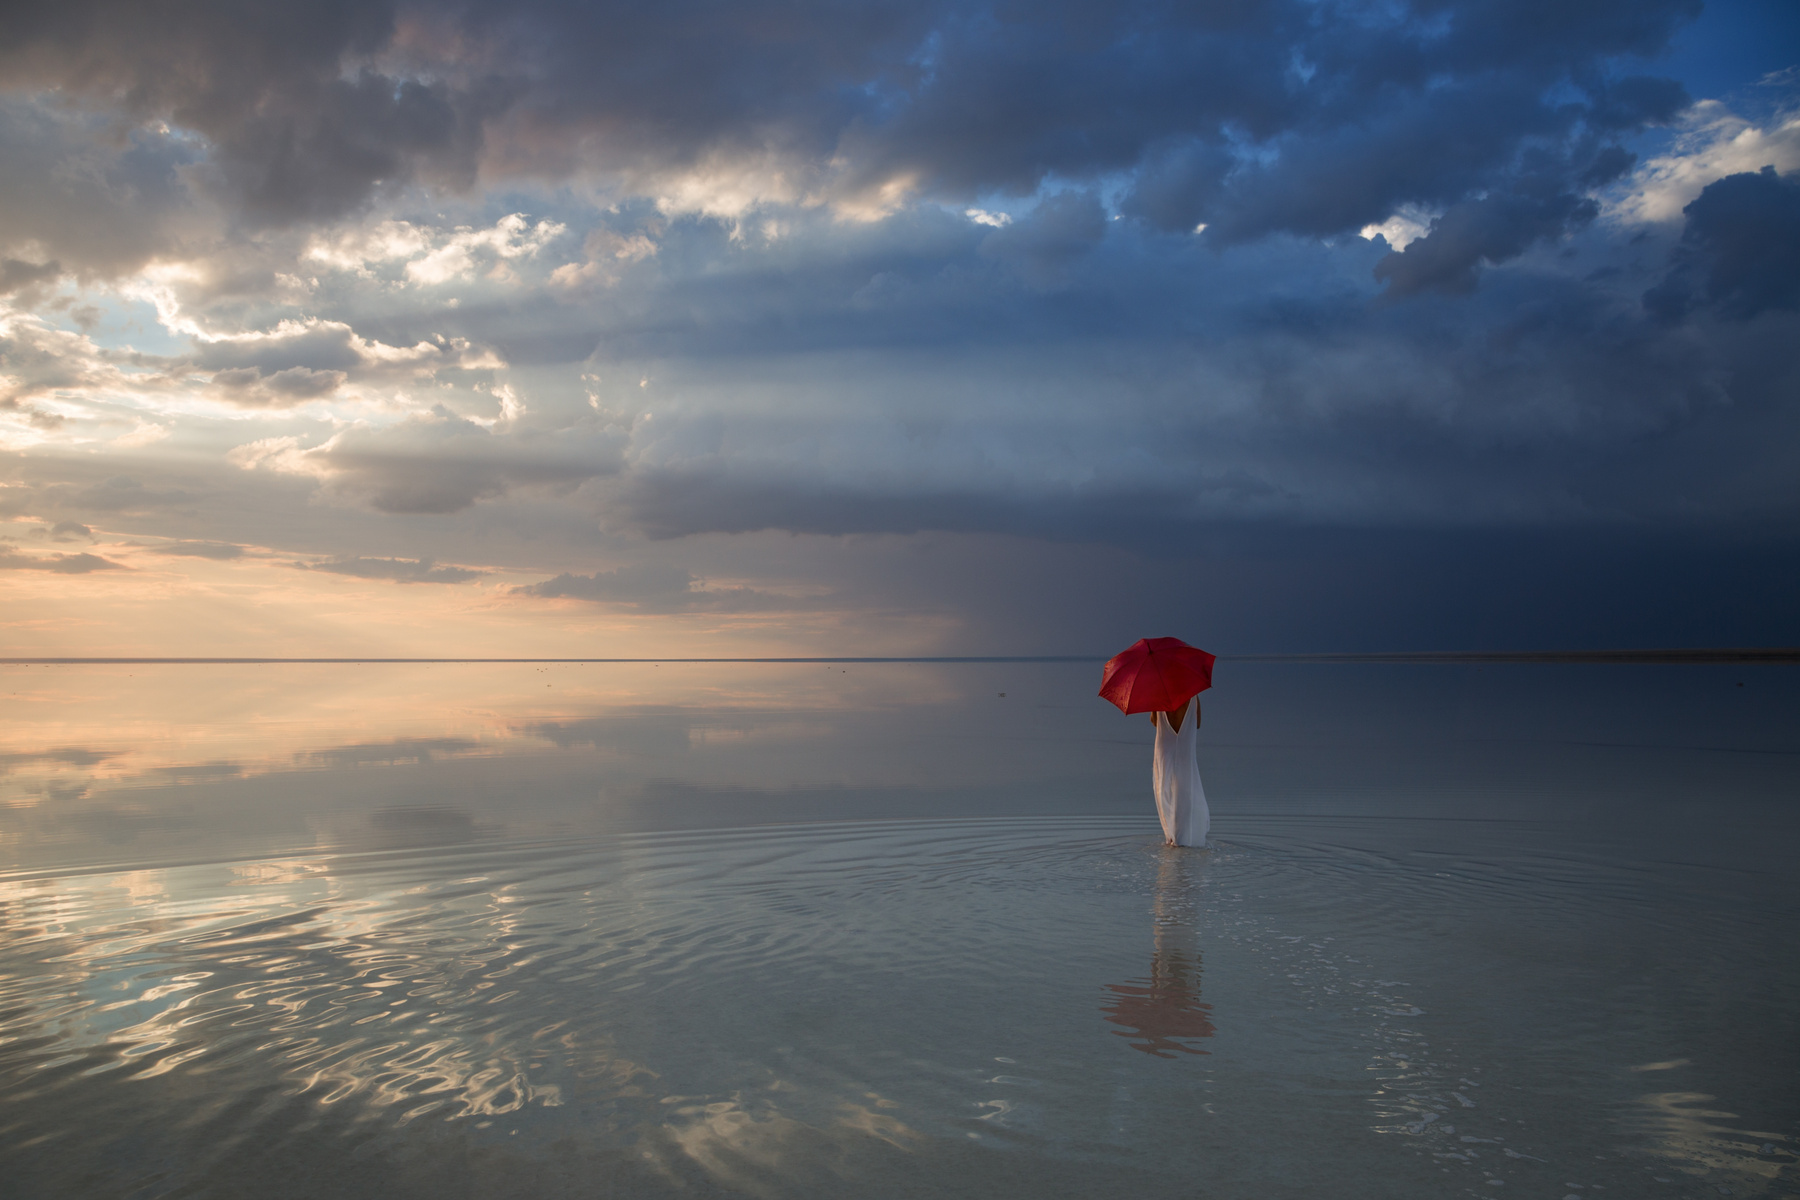 После грозы или прогулка по Эльтону... фото цвет девушка гламур озеро зонт вода небо облака солнце Эльтон